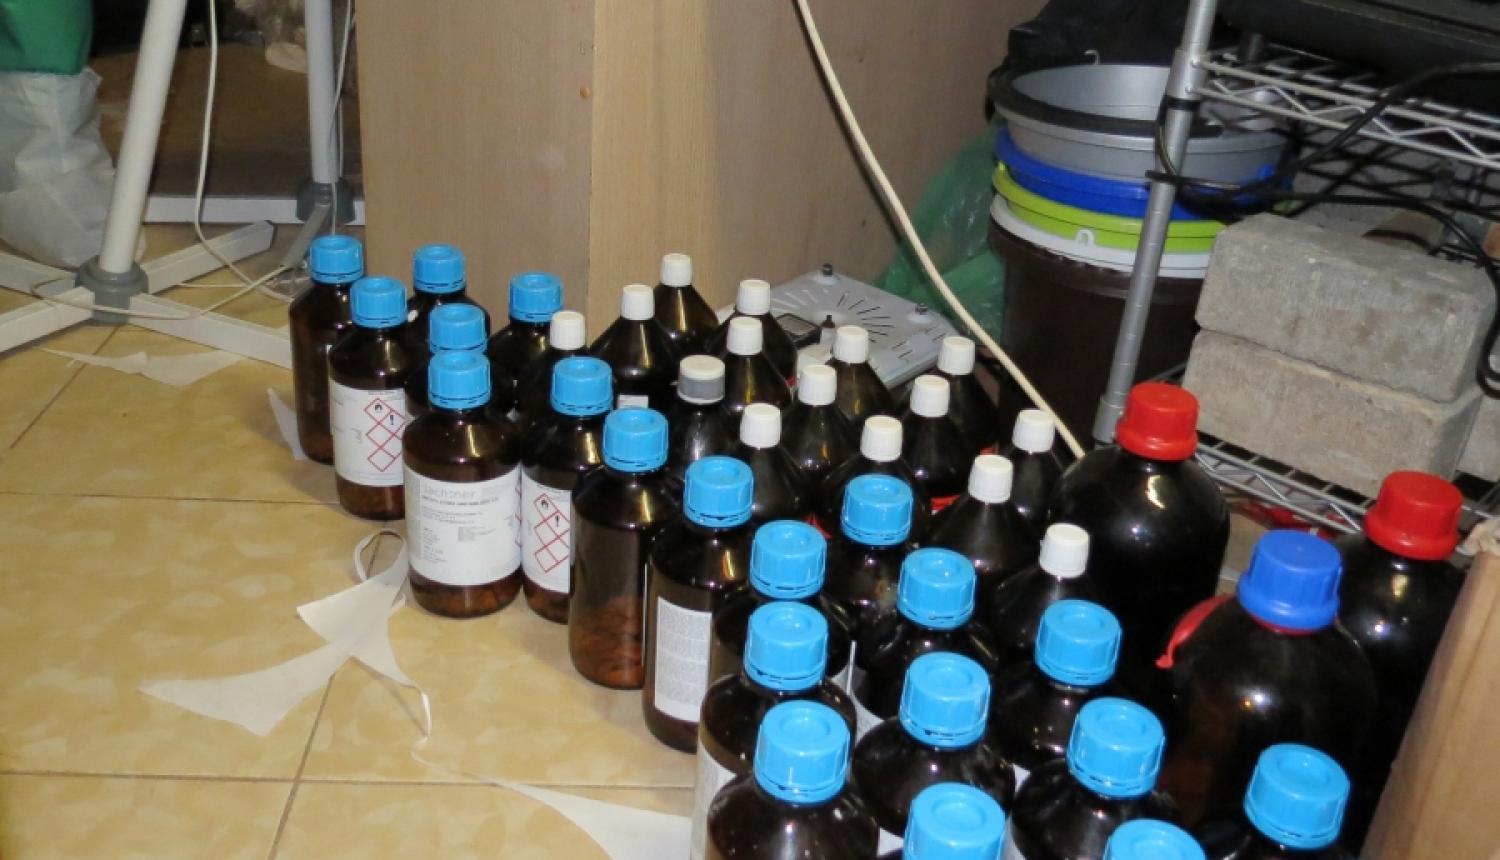 Valsts policija Krimuldas novadā aptur metadona laboratorijas darbību